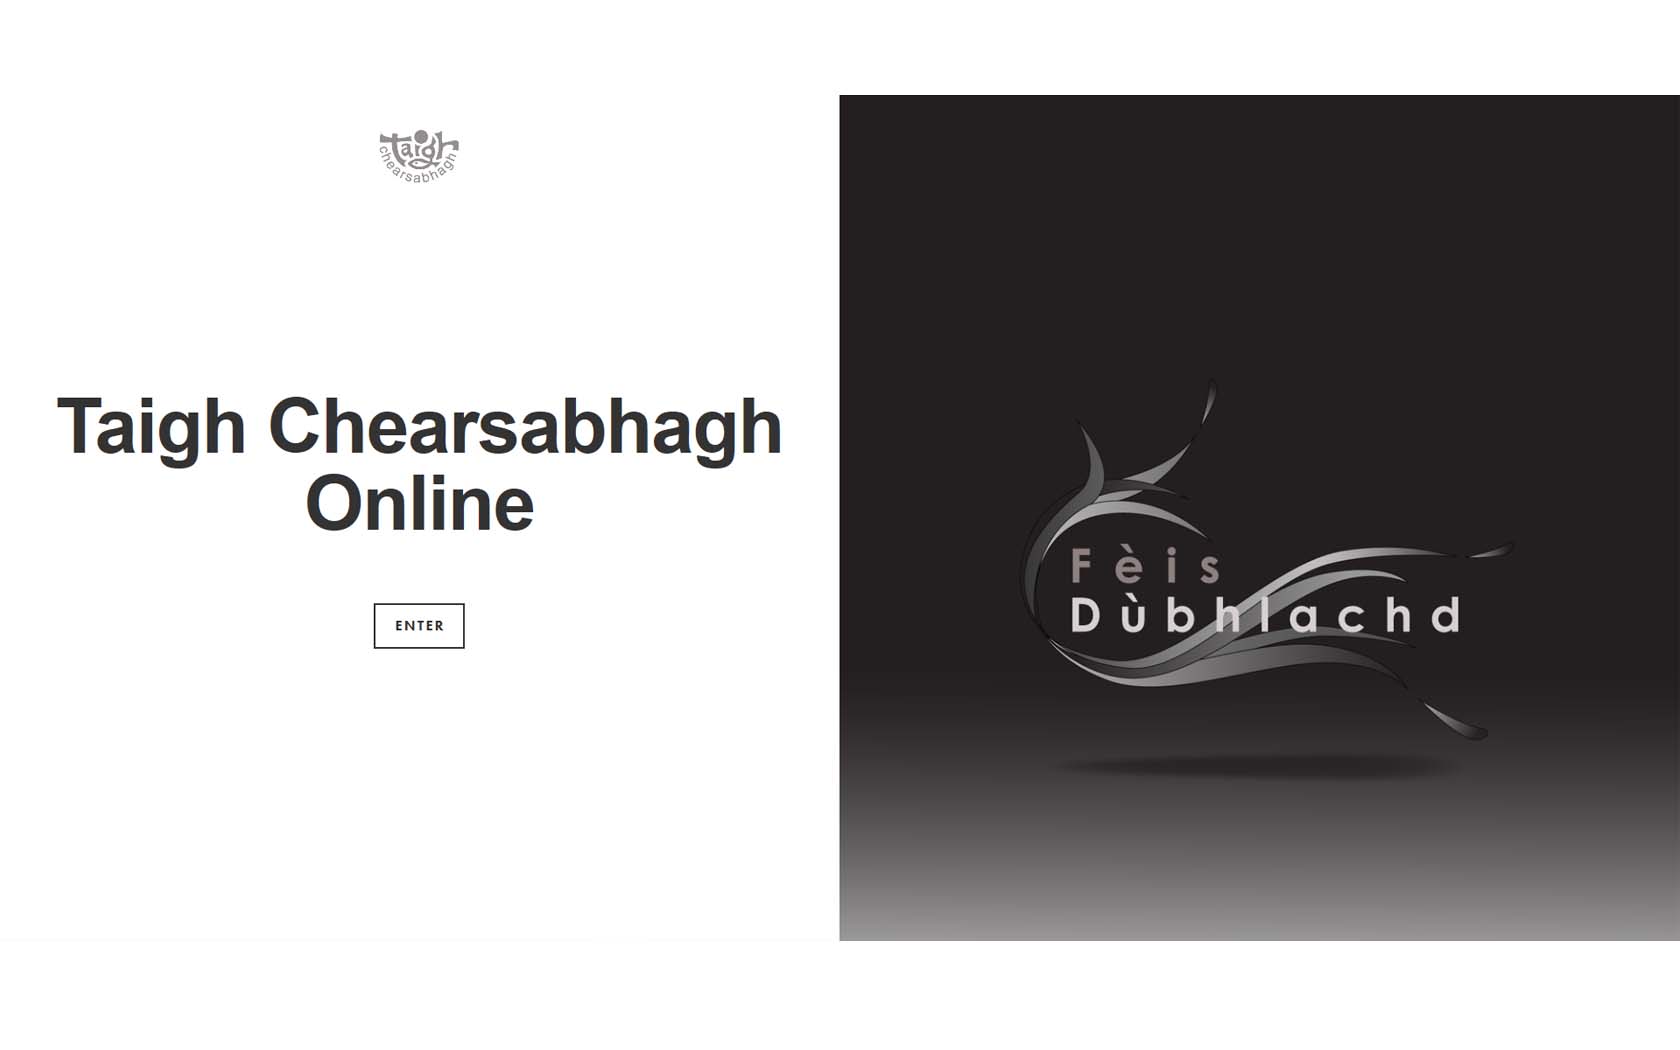 Taigh Chearsabhagh online